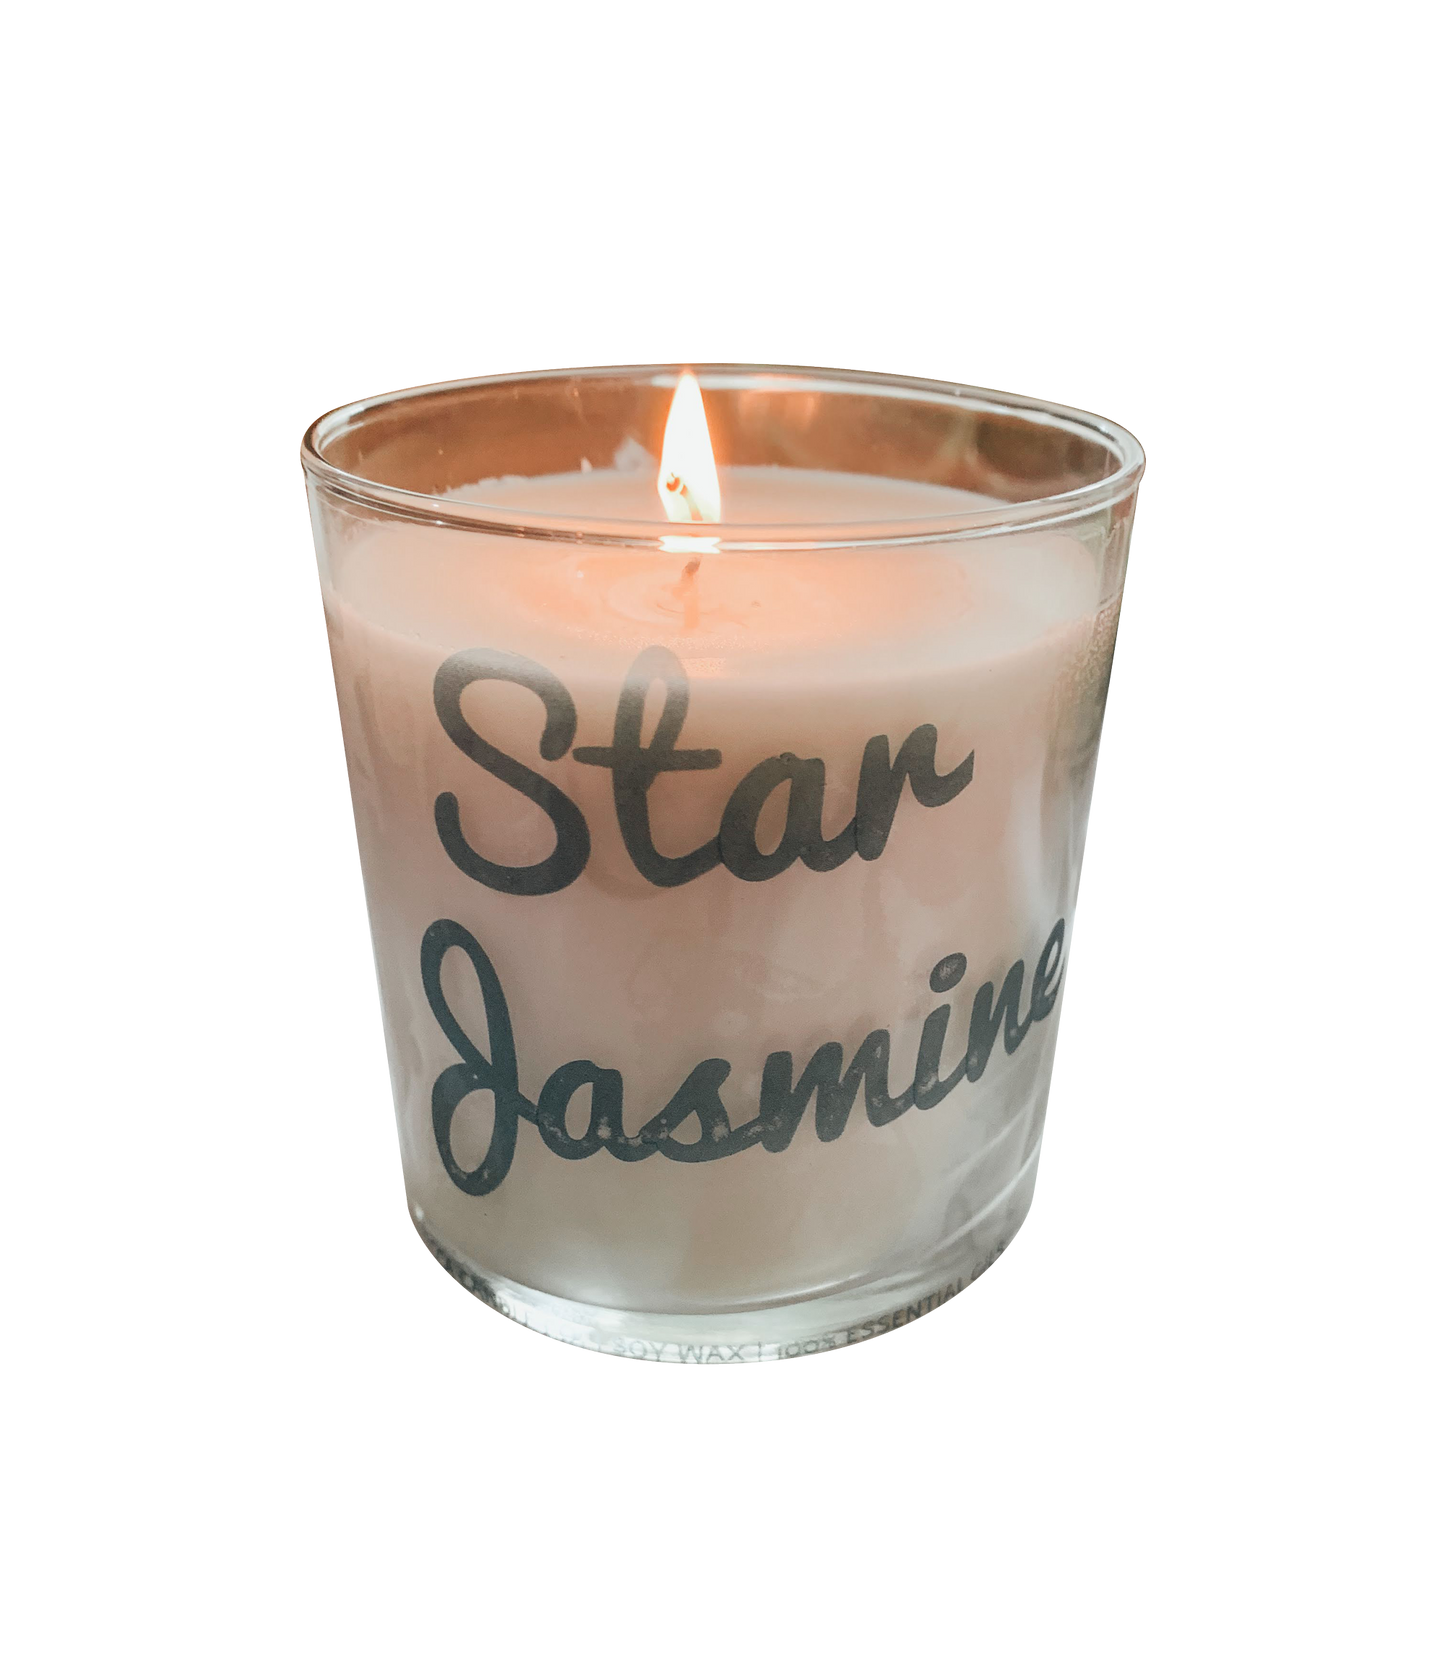 Star Jasmine